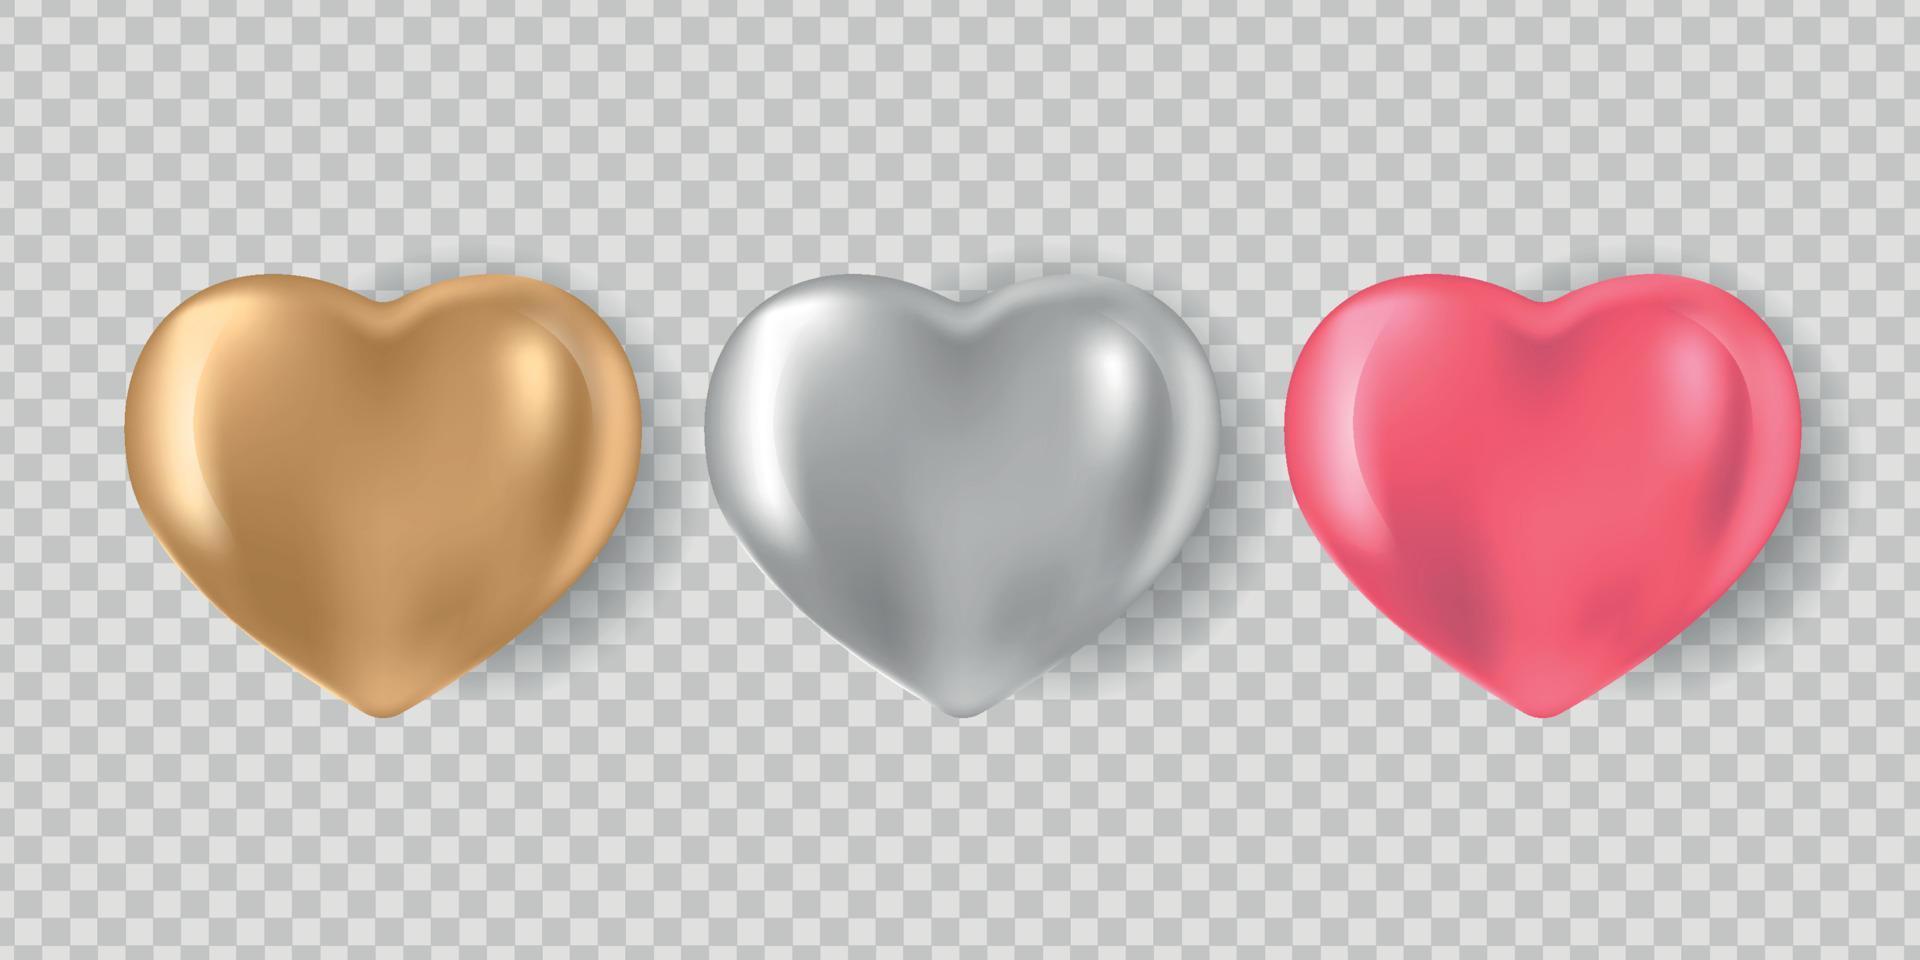 conjunto de corazones 3d realistas aislado sobre fondo blanco. vector